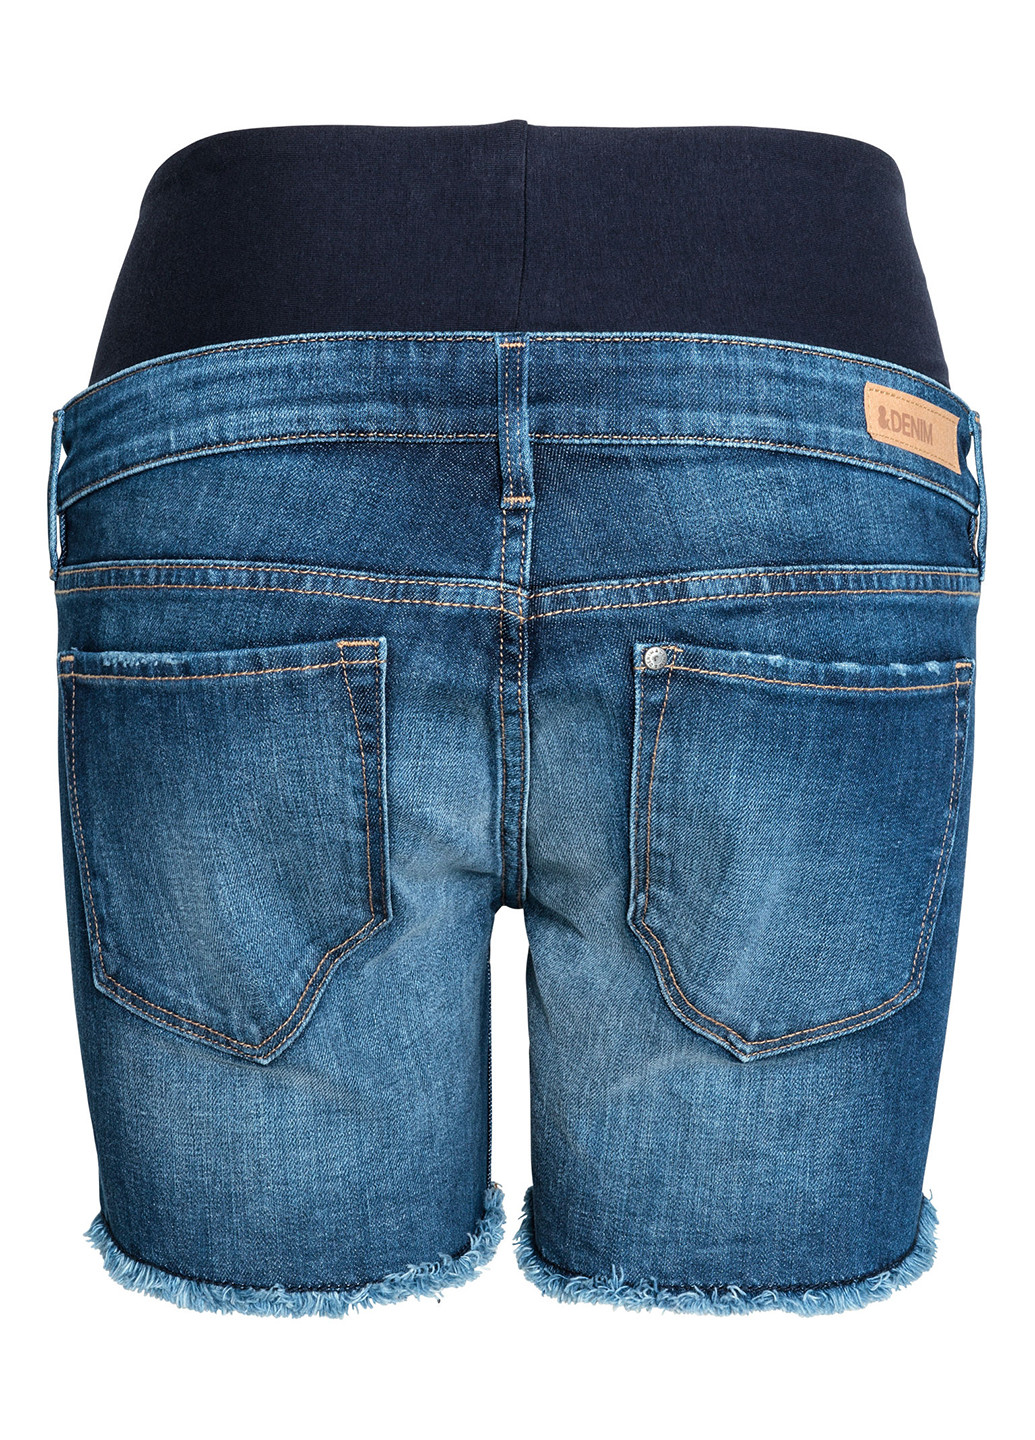 Шорты для беременных H&M однотонные синие джинсовые хлопок